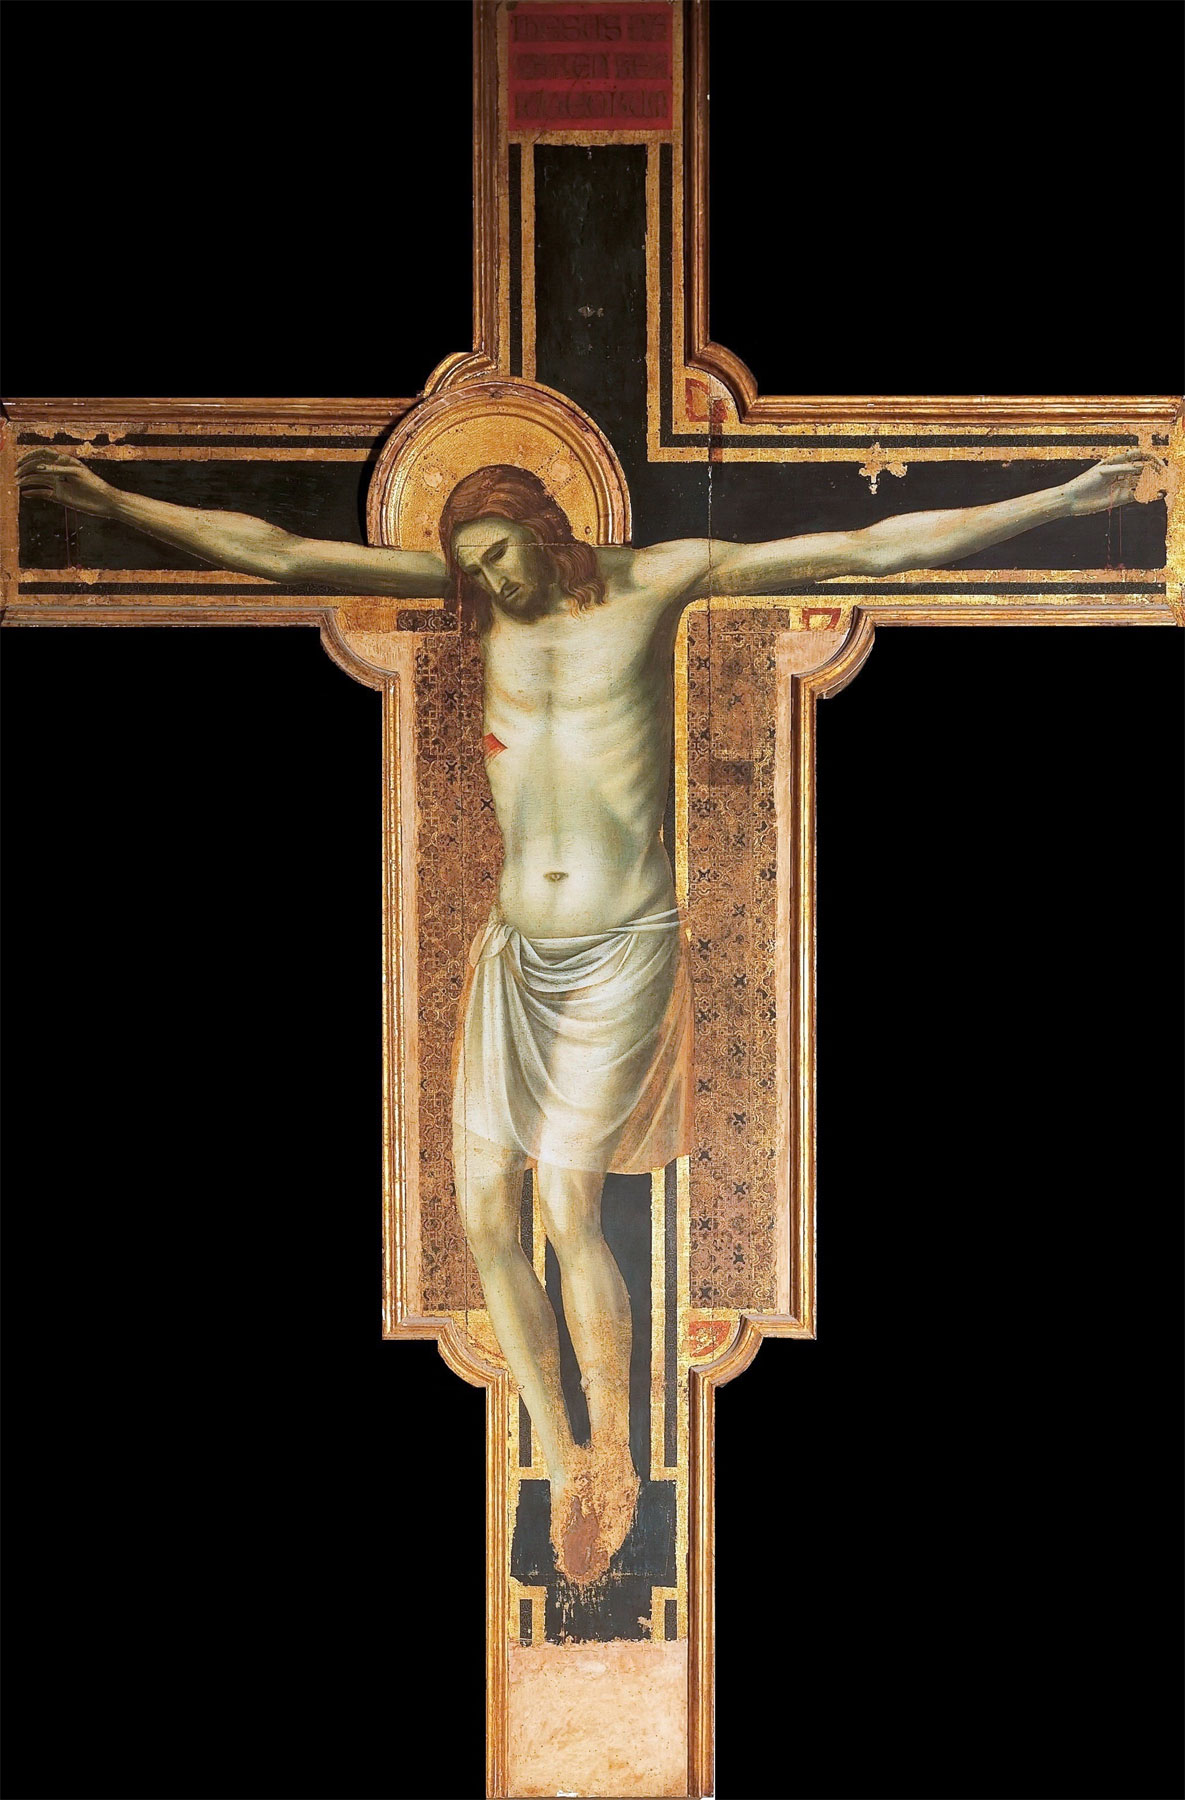 Giotto, Crocifisso di Rimini (1301-1302 circa; tempera e oro su tavola, 430 x 303 cm; Rimini, Tempio Malatestiano) 